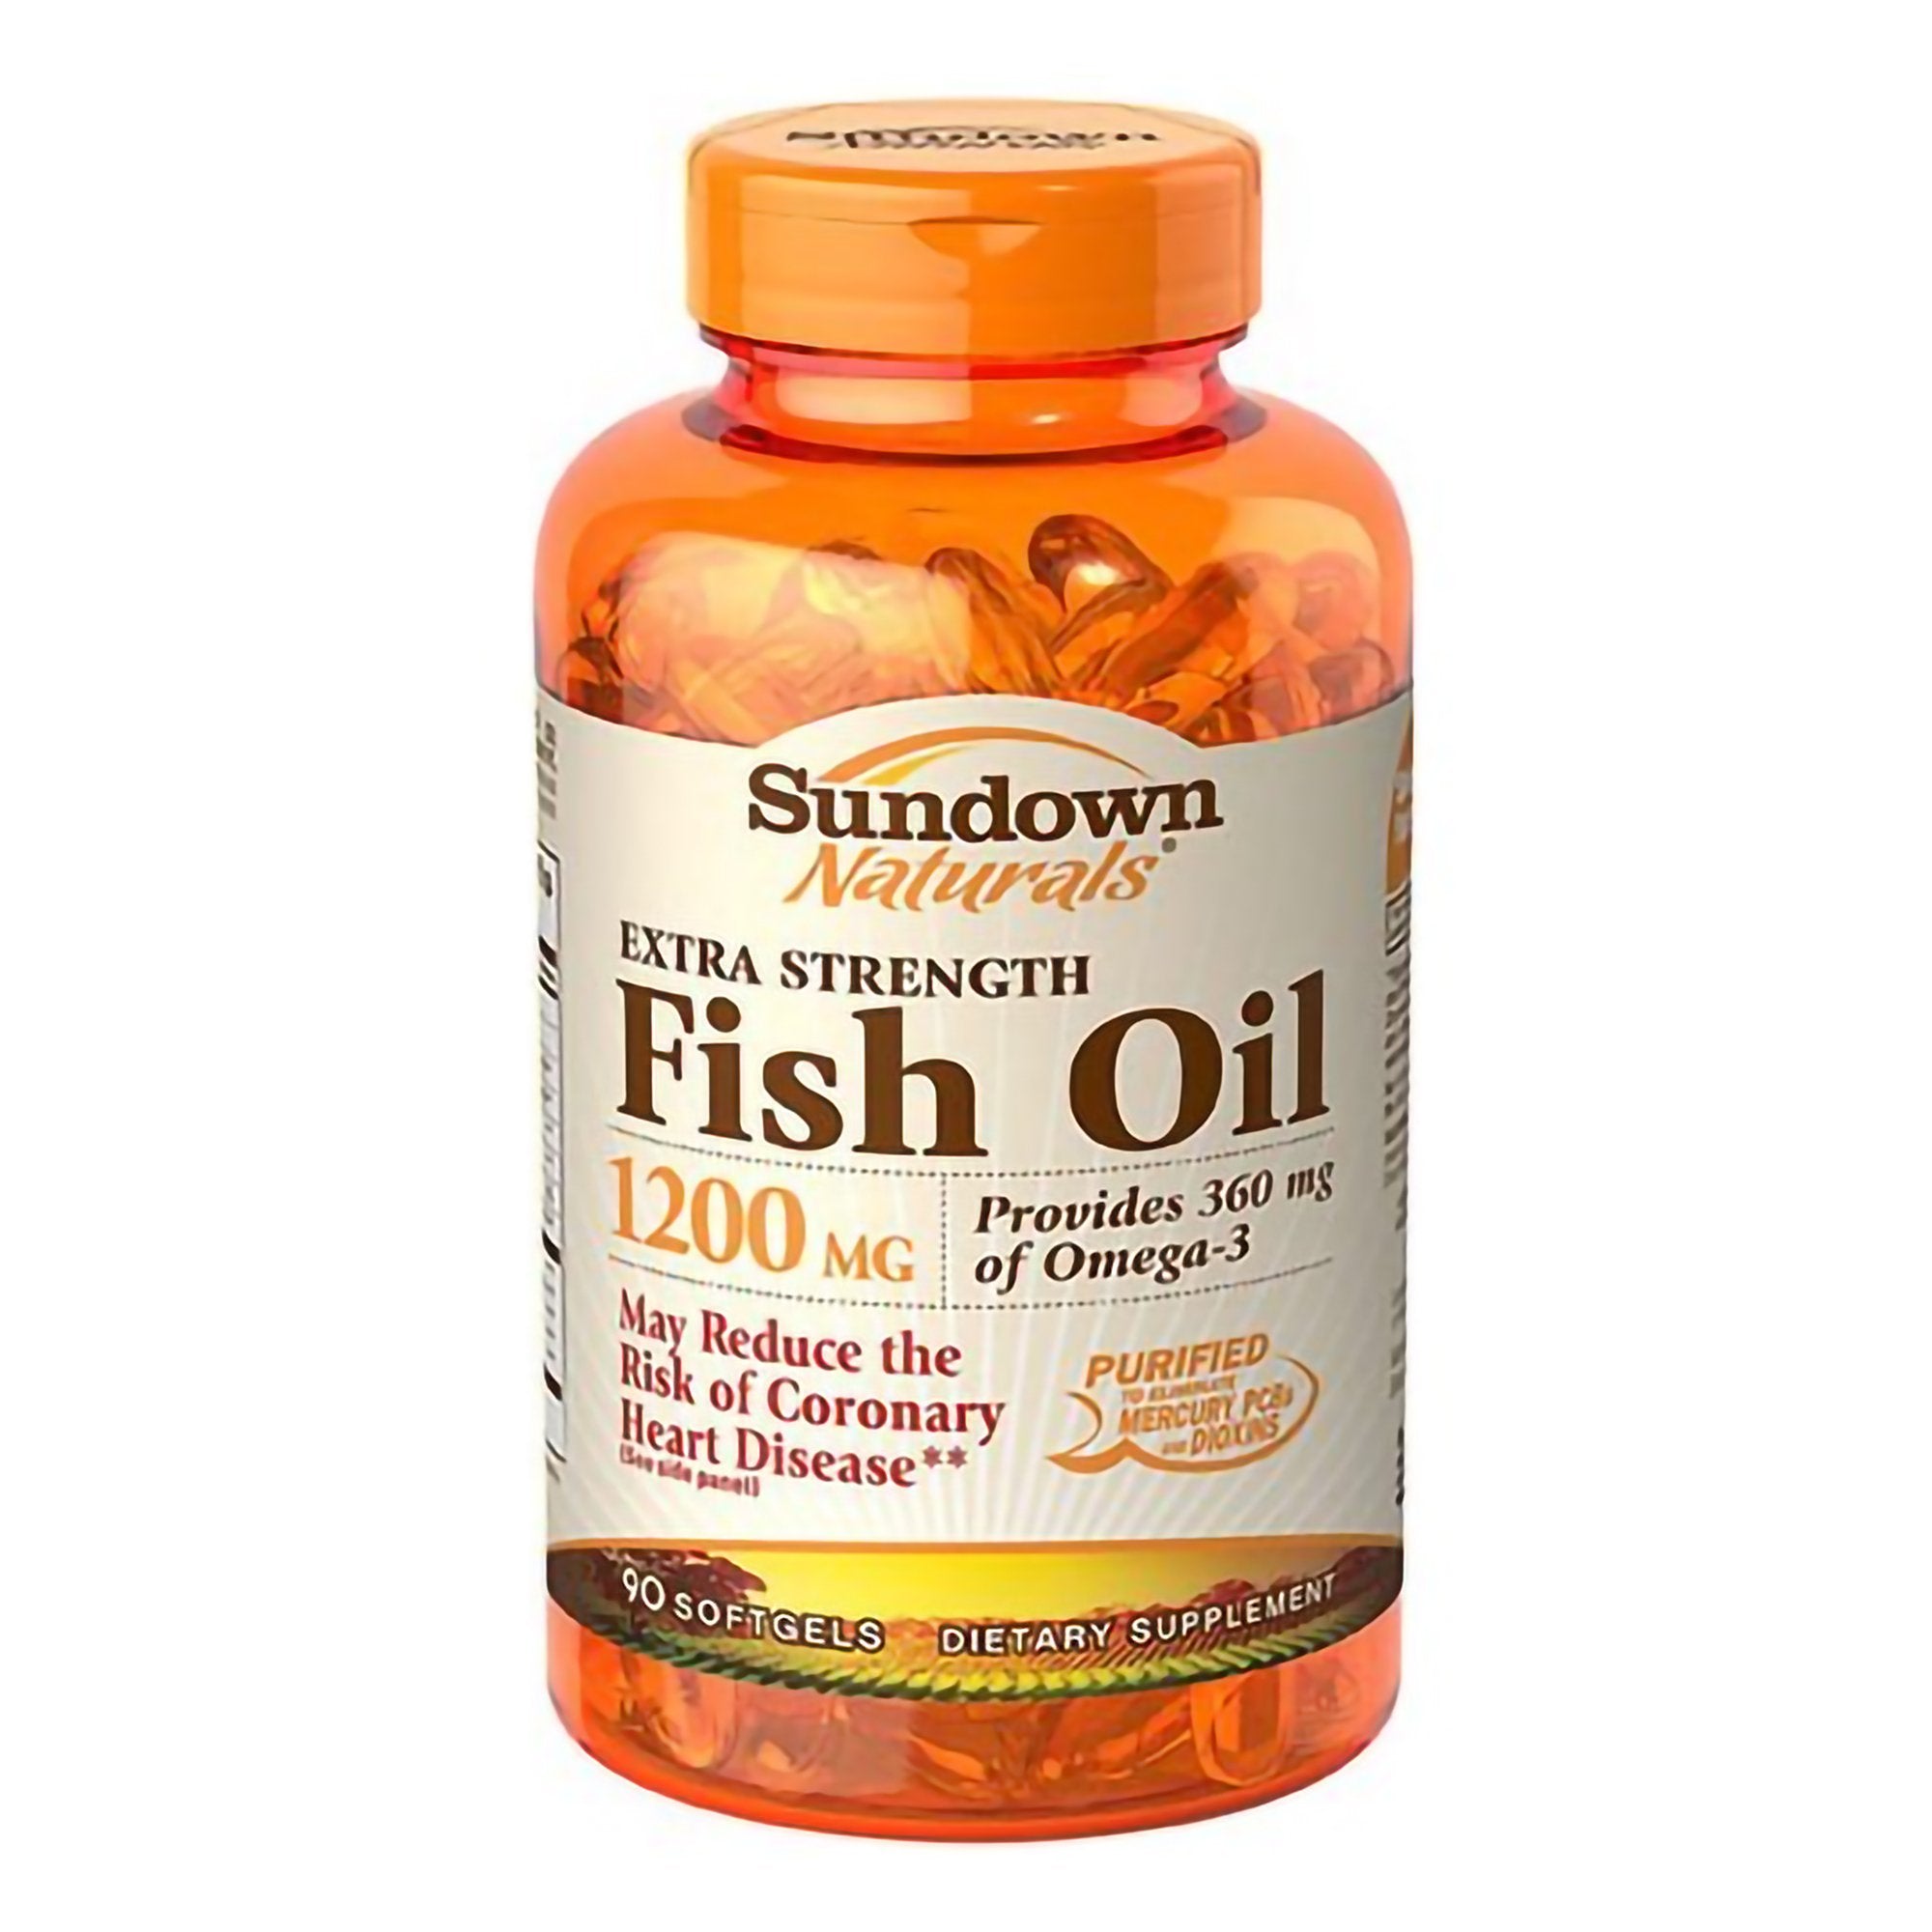 Omega 3 Supplement Sundown Naturals® Fish Oil 1200 mg Strength Softgel 90 per Bottle